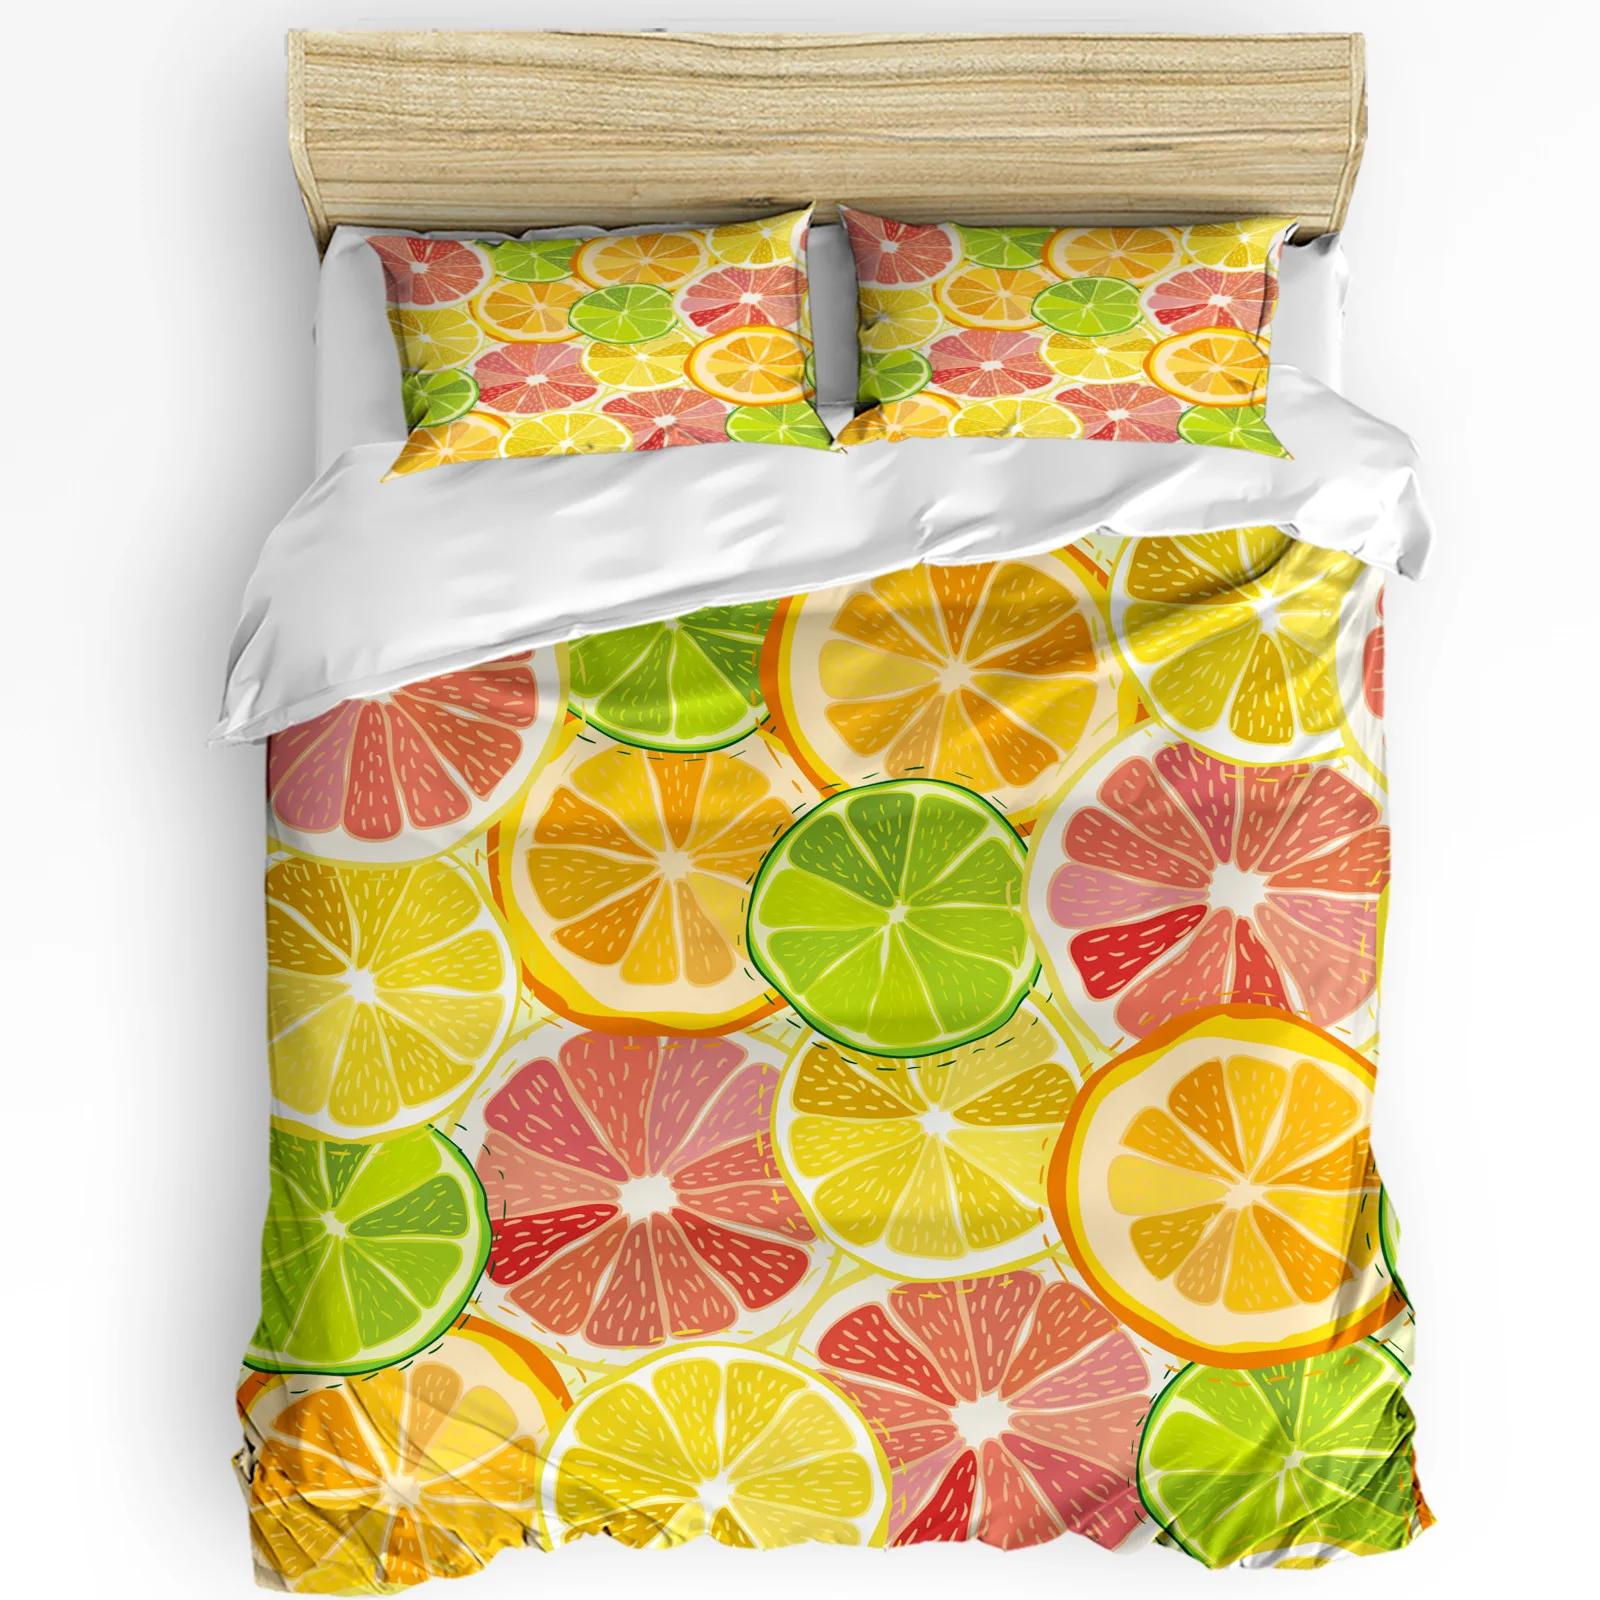 Watercolor Lemon Fruit Bedding Set 3pcs Boys Girls Duvet Cover Pillowcase Kids Adult Quilt Cover Double Bed Set Home